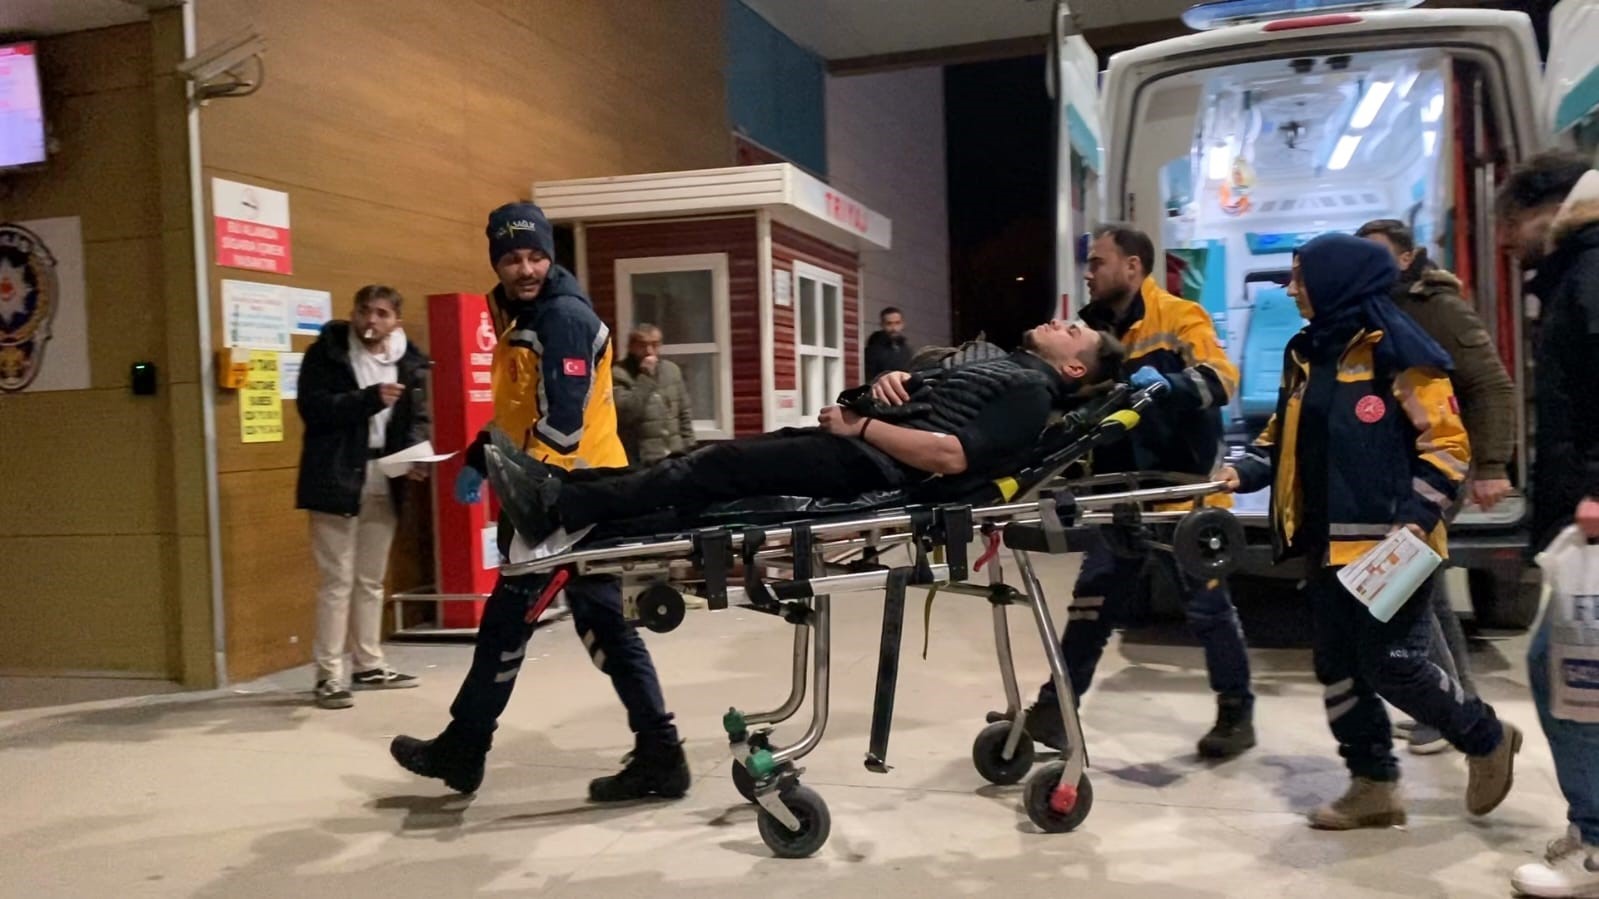 Bursalı iki grup arasındaki mücadelede bıçaklar kullanıldı: 2 kişi yaralandı